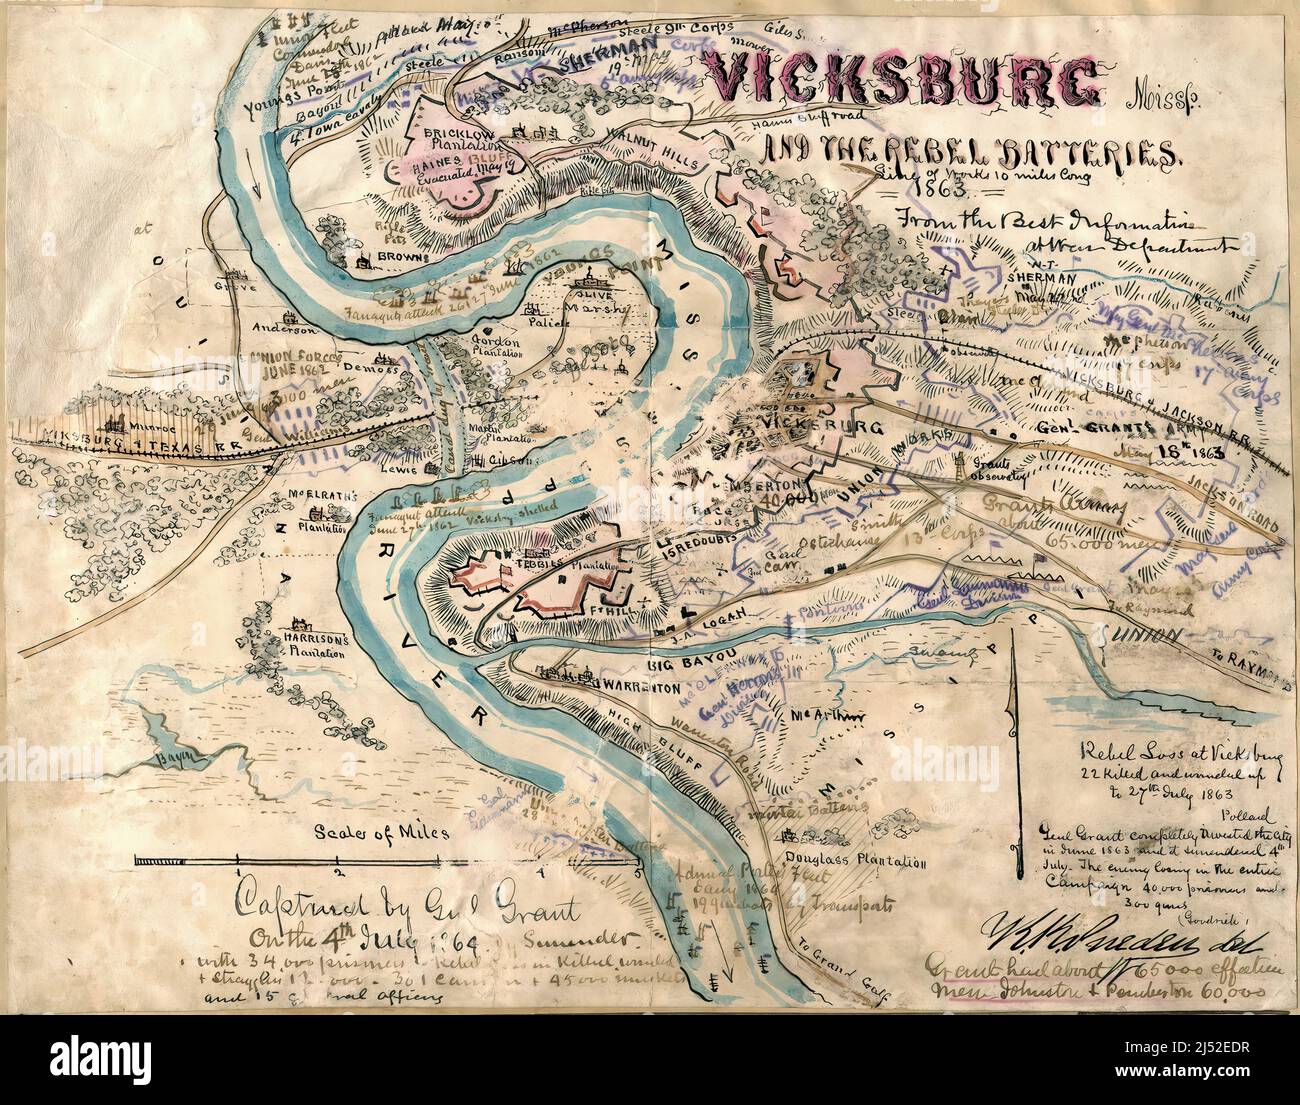 1863 mappa a colori delle batterie confederate a Vicksburg, Mississippi, durante la guerra civile americana. Acquerello e penna-e-inchiostro di Robert Knox Sneden. Foto Stock